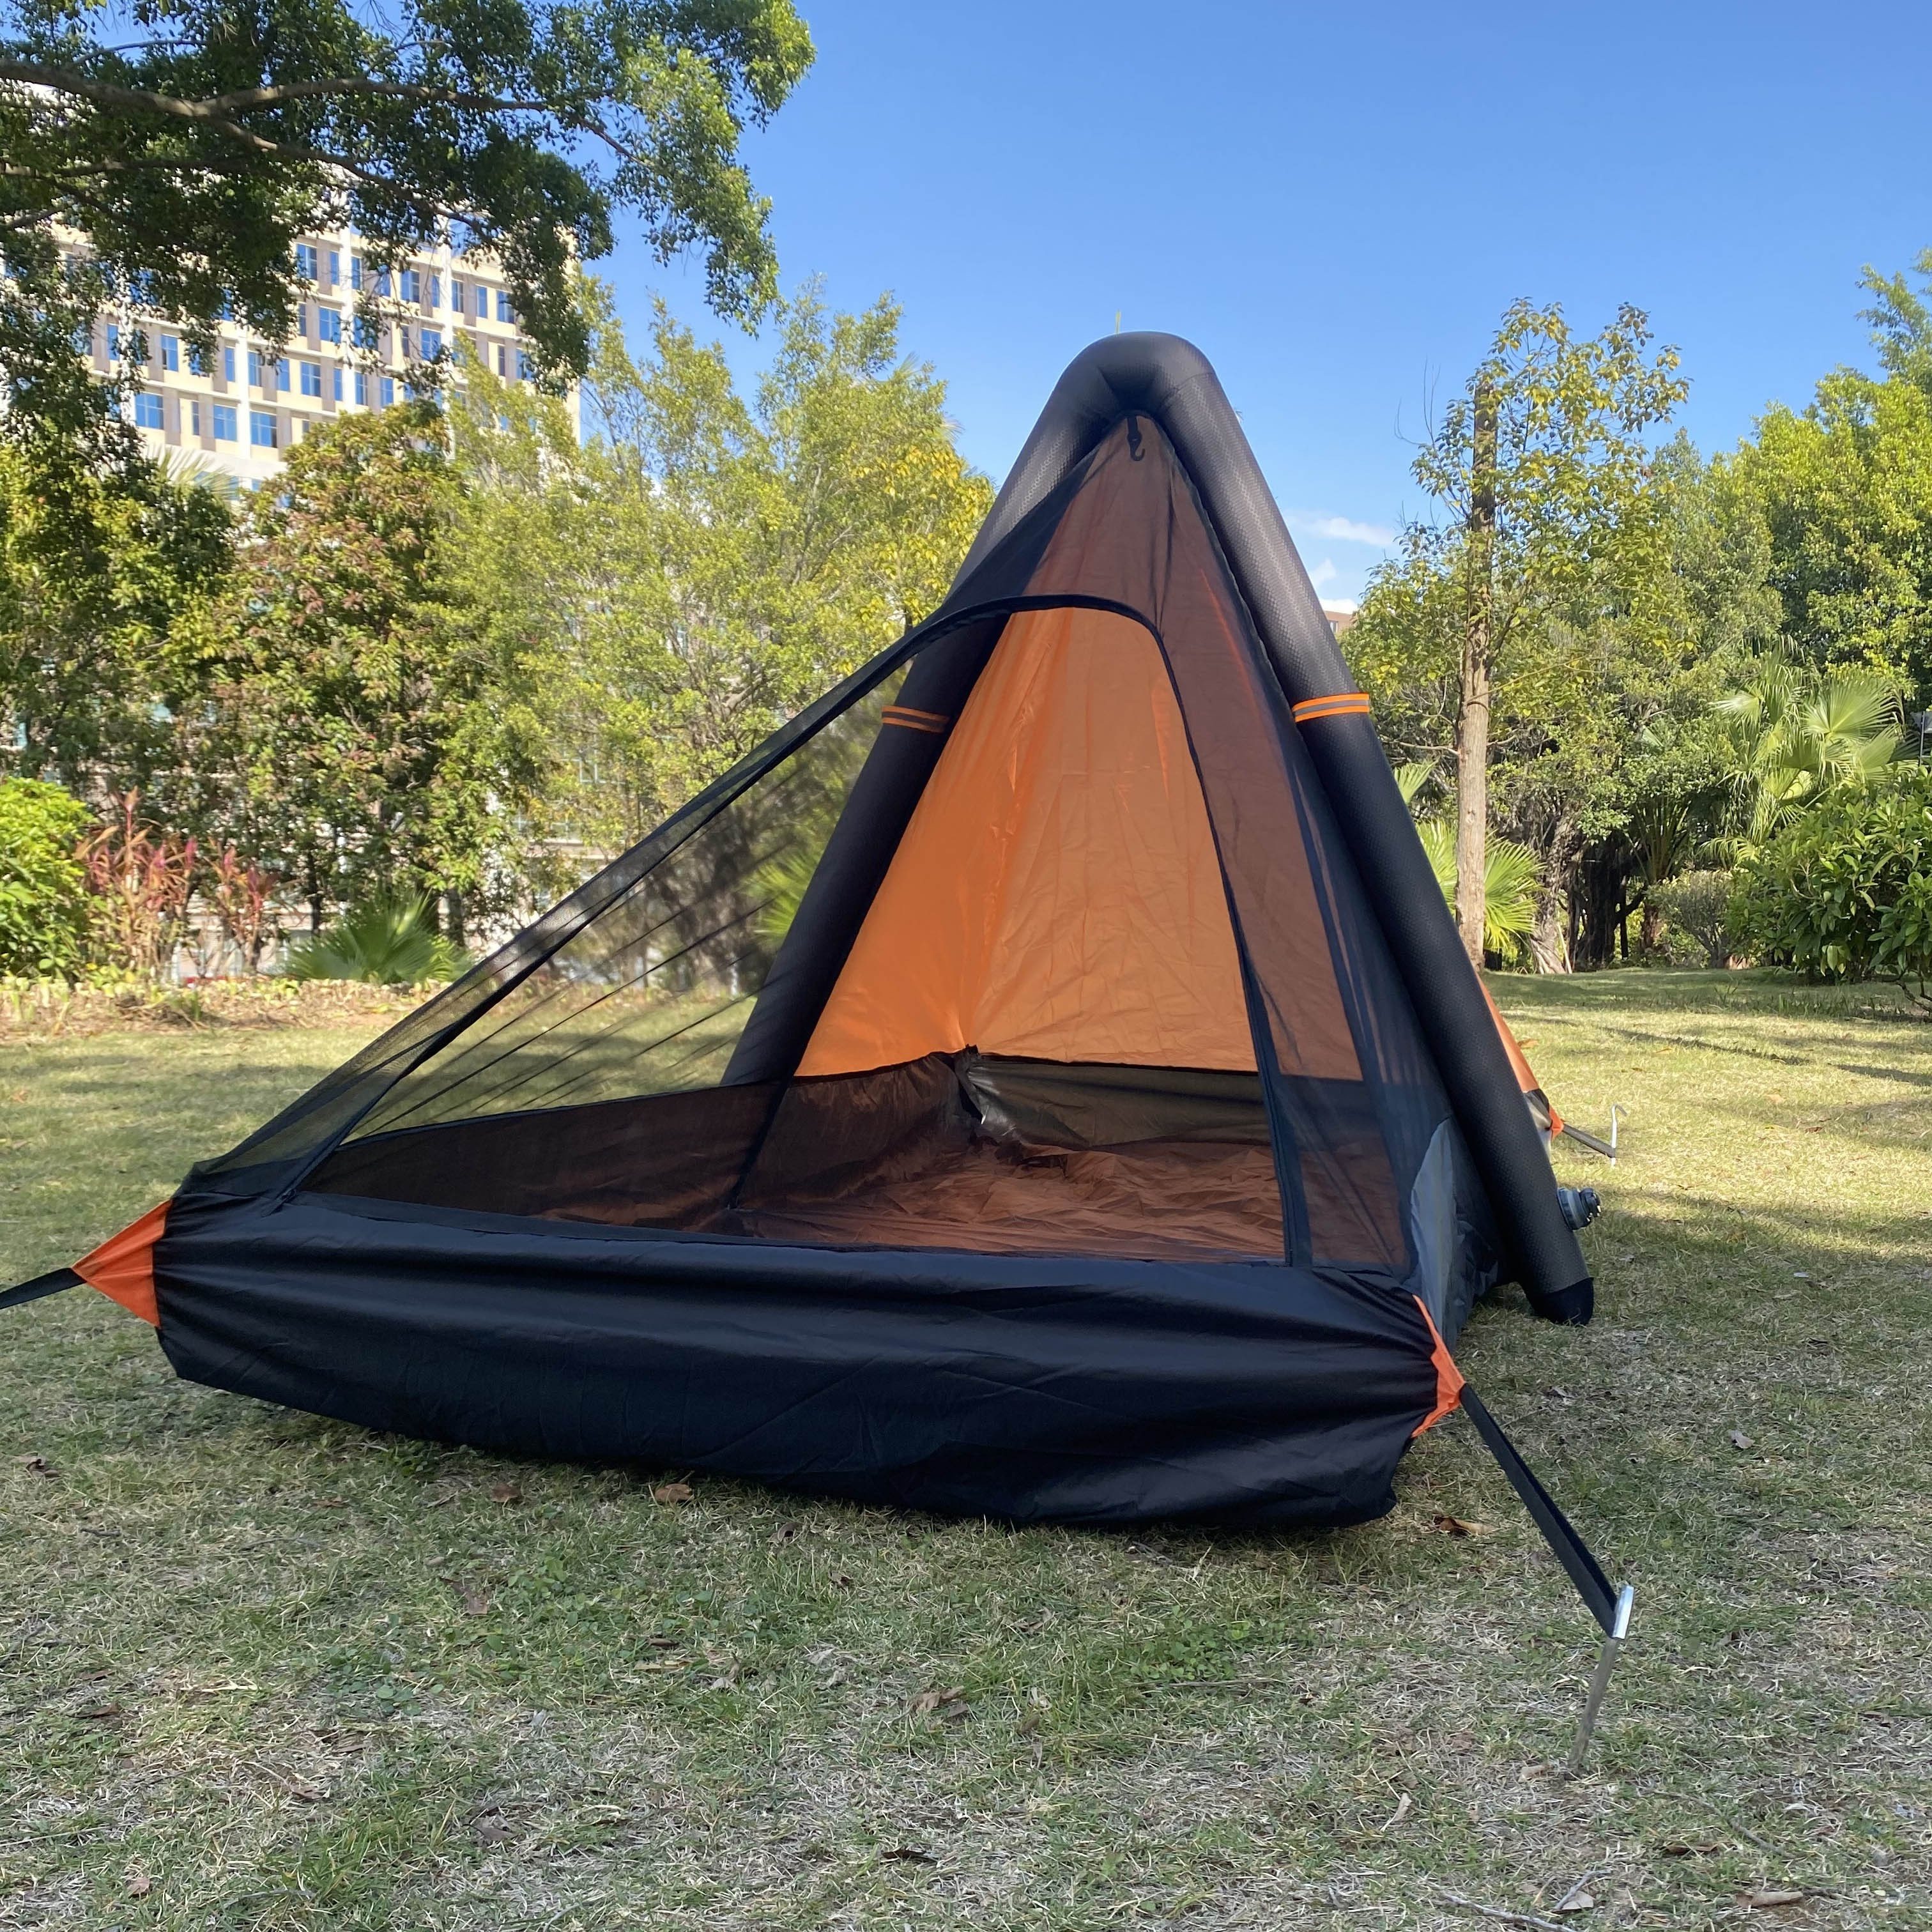 Tragbares, Aufblasbares, Wasserdichtes Zelt Für Eine Person, Outdoor-zelt,  Geeignet Zum Wandern, Camping, Rucksackreisen, Kaufen Sie Die Neuesten  Trends